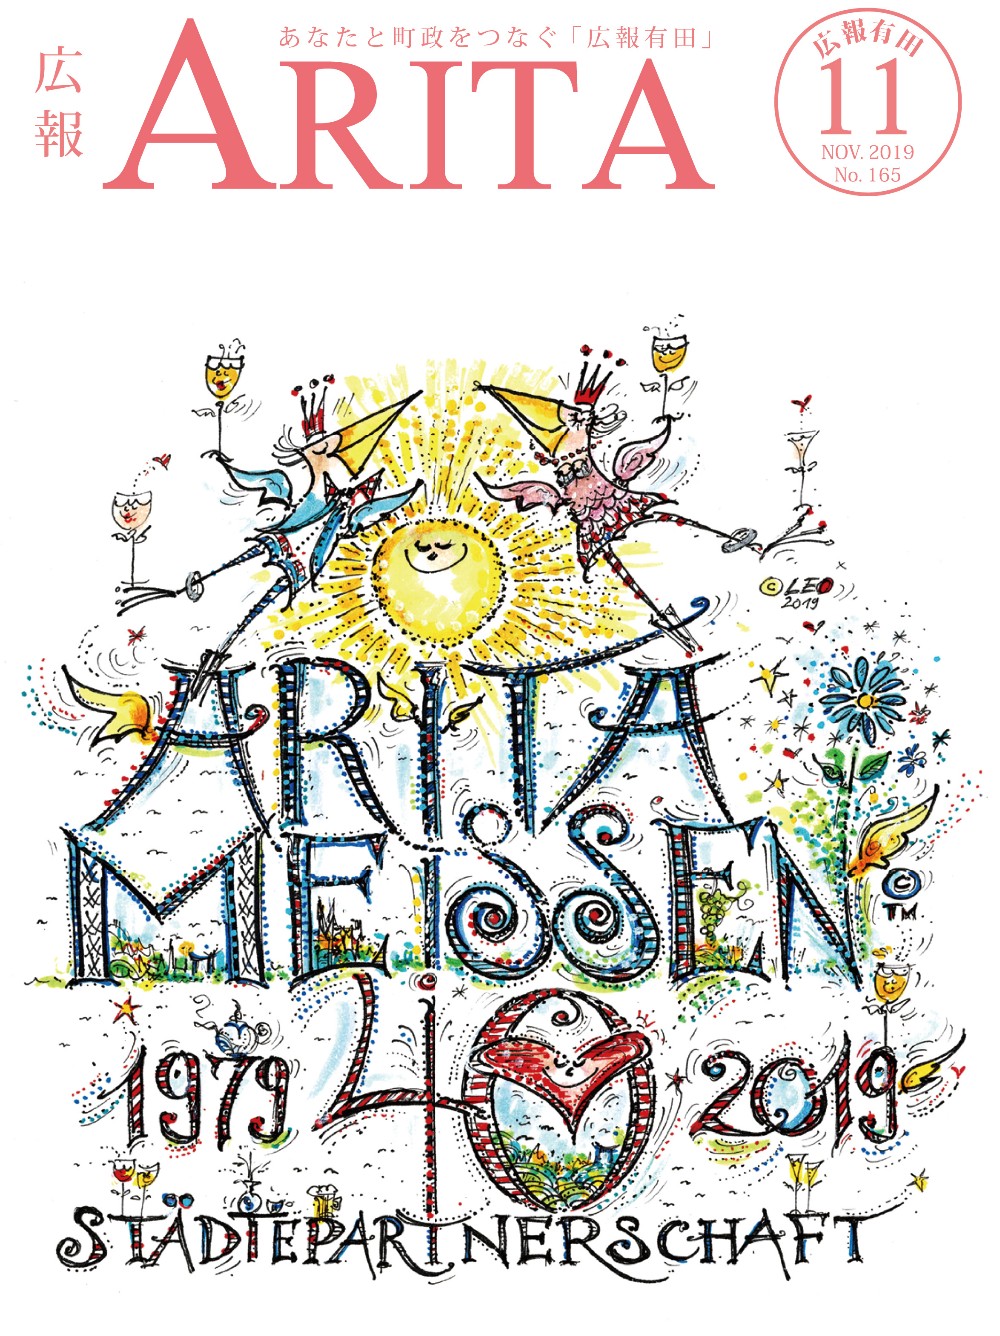 arita2019-11-1